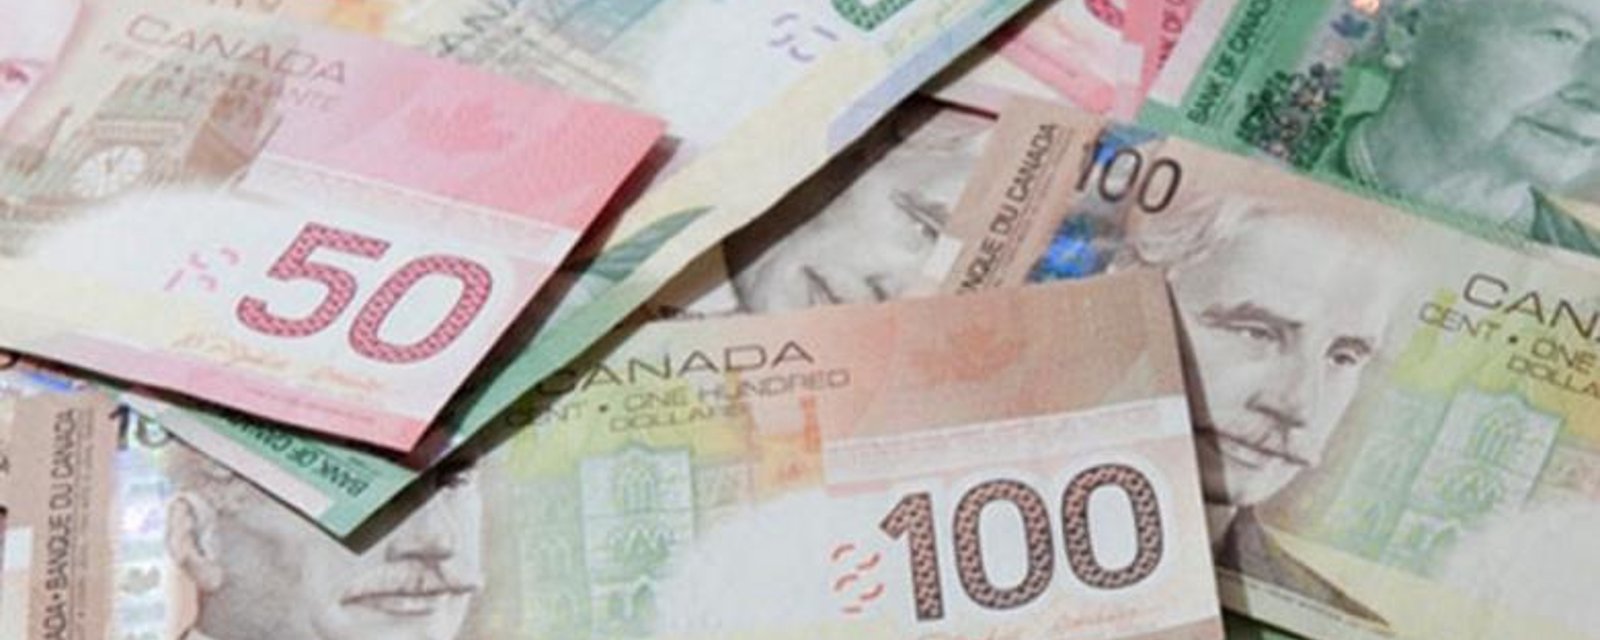 Voici les deux Québécoises qui pourraient figurer sur le nouveau billet de banque!